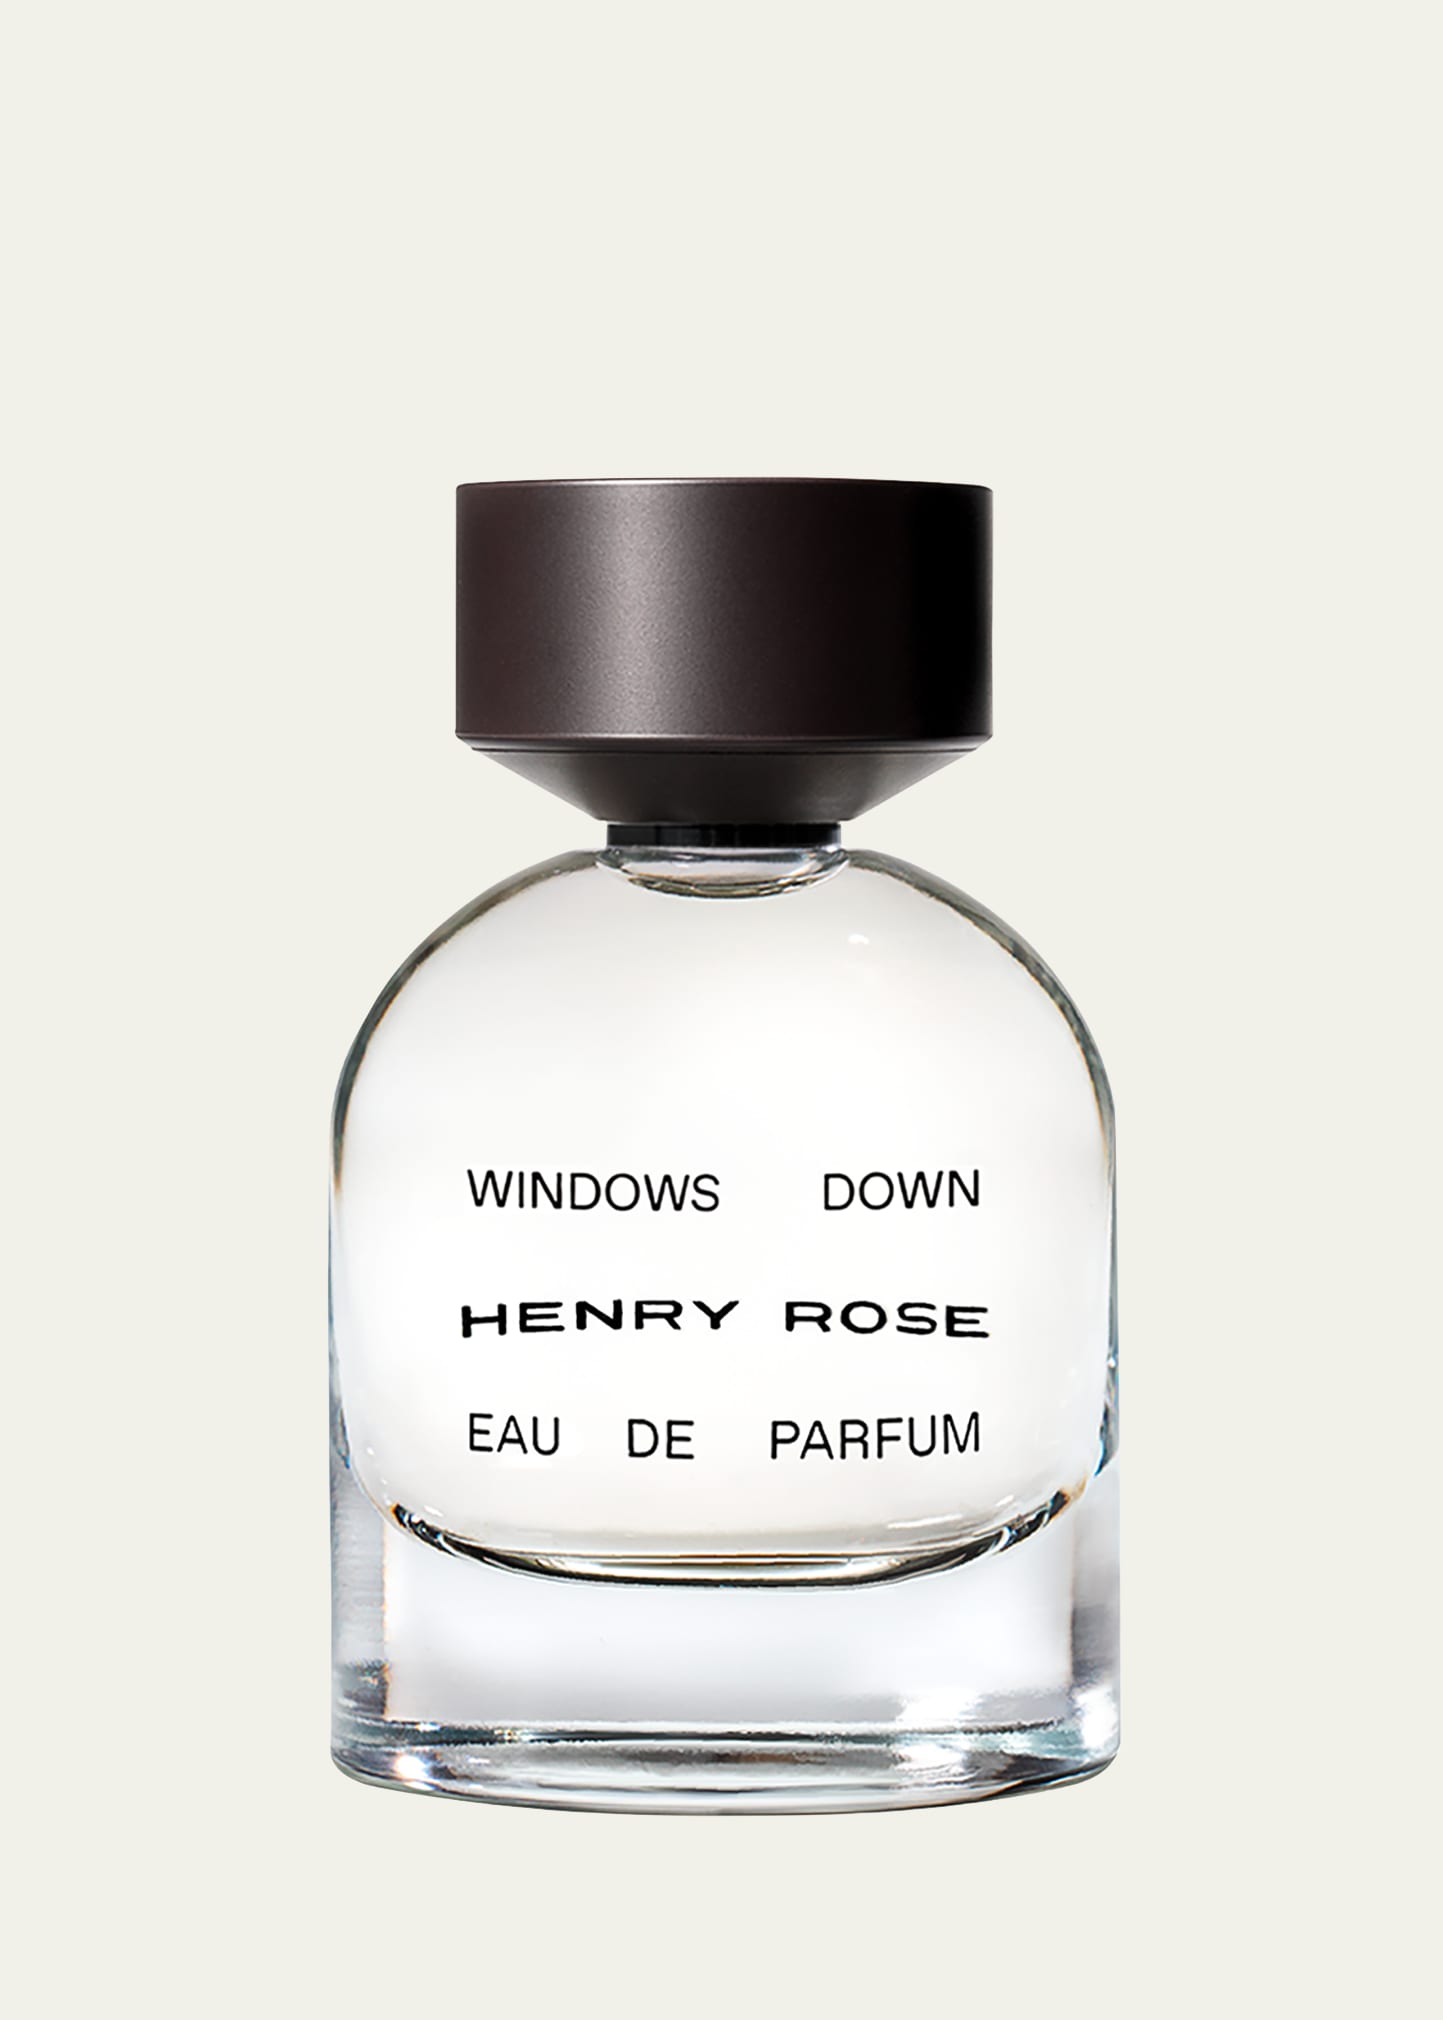 HENRY ROSE Windows Down Eau de Parfum, 1.7 oz.